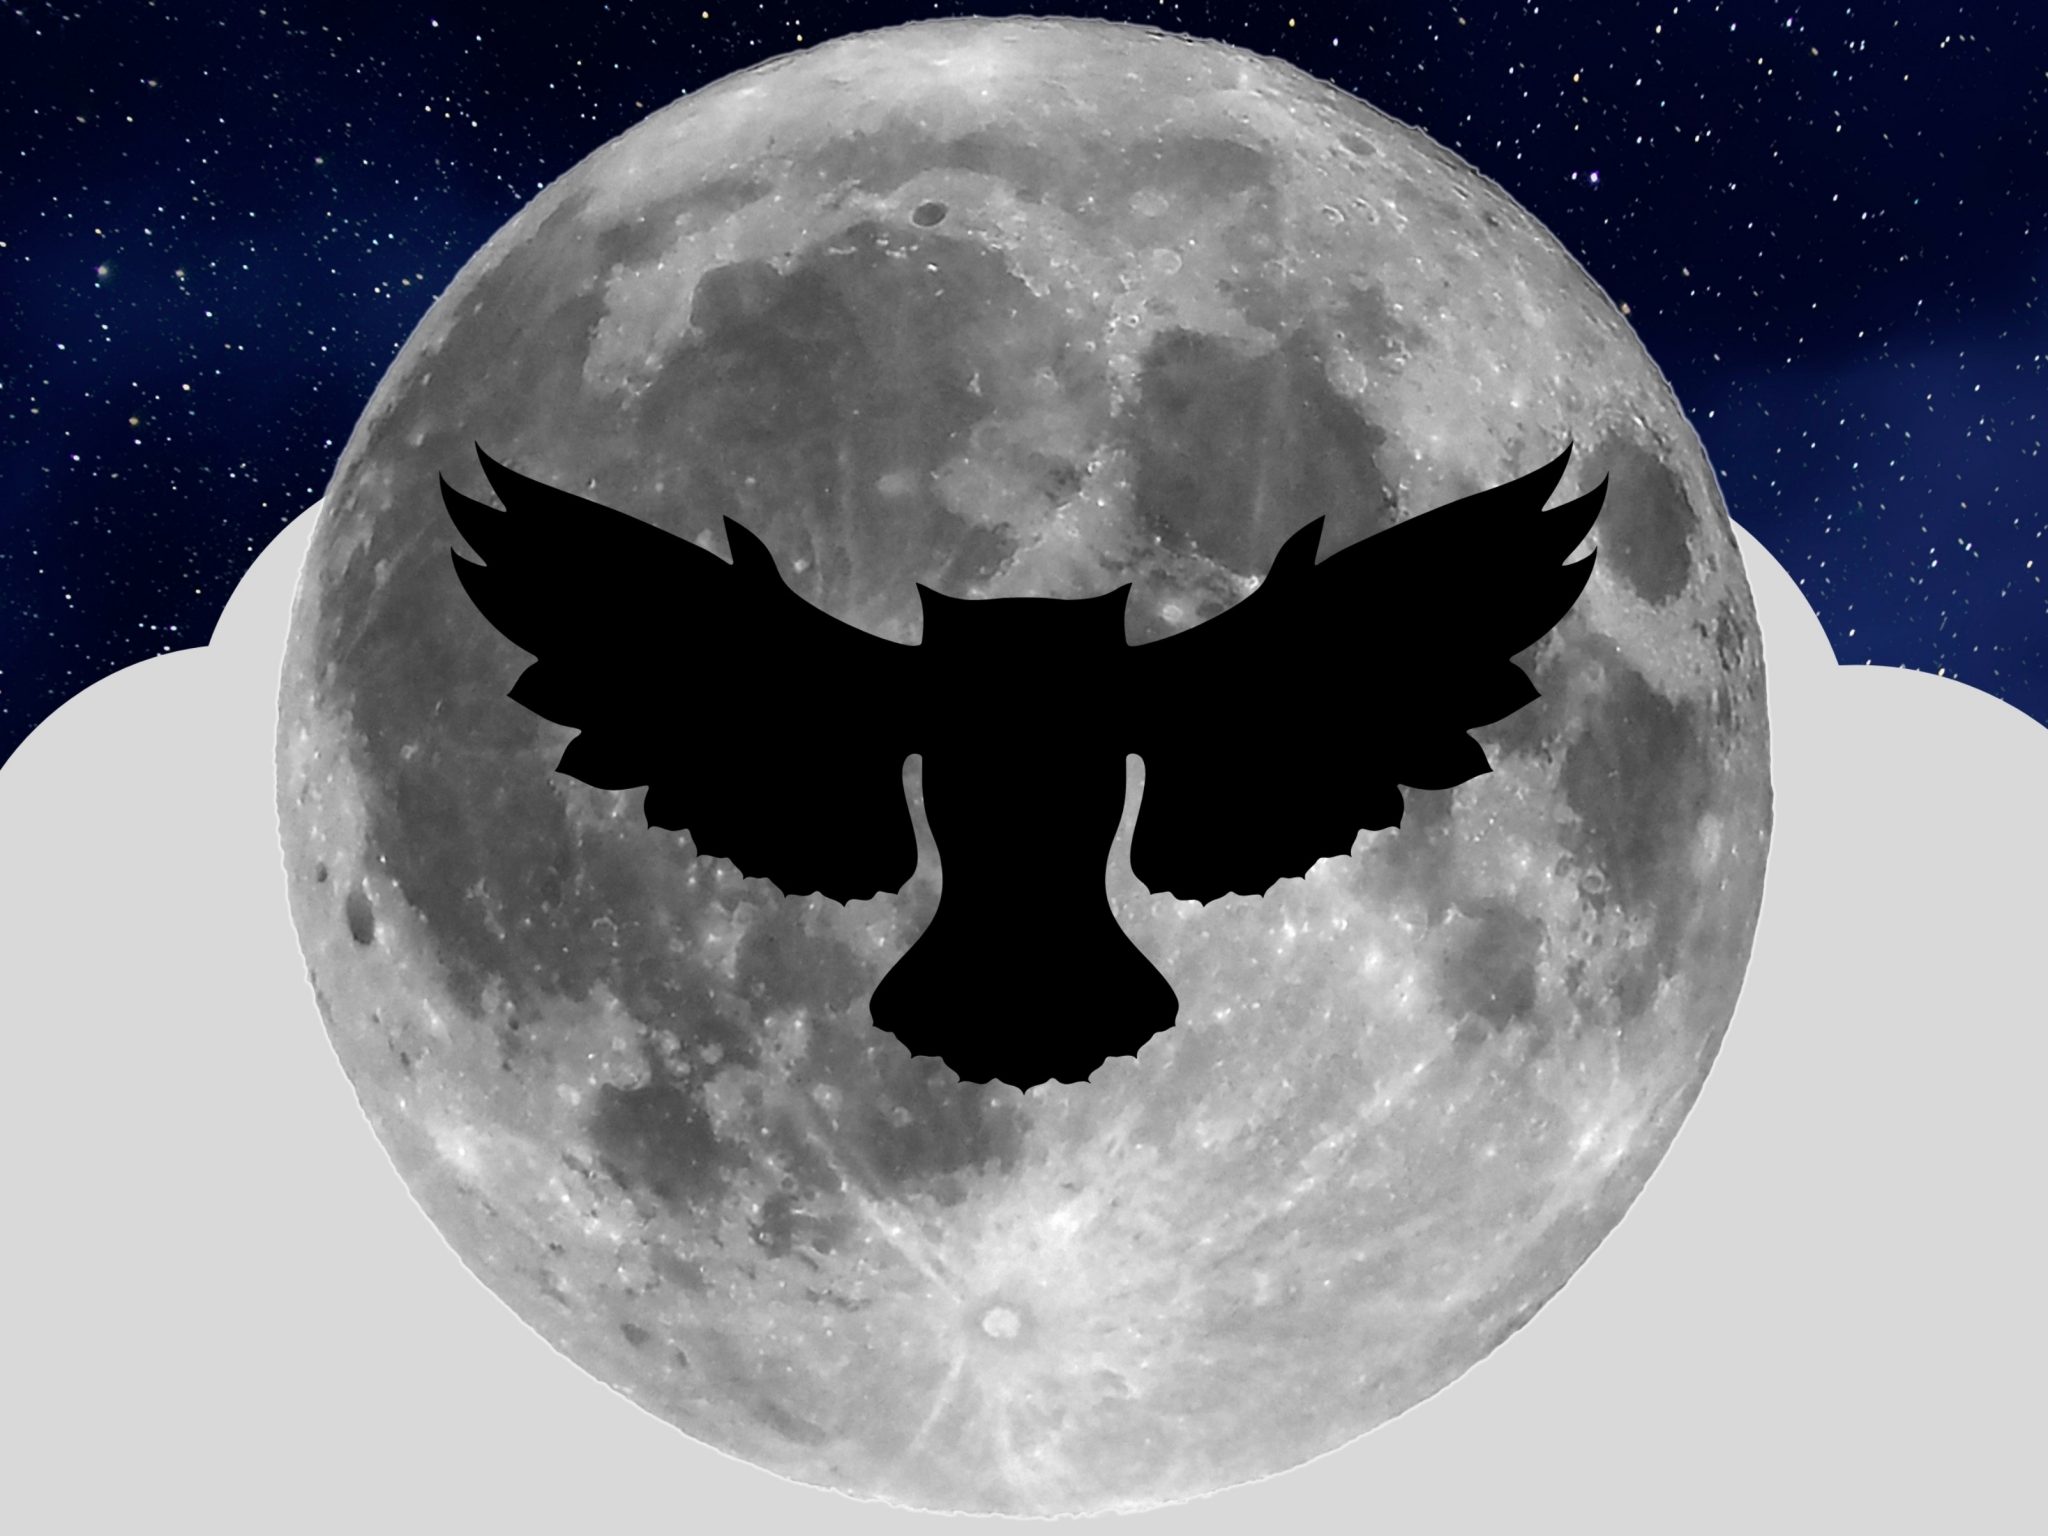 2048x1536 wallpaper Night Owl Full Moon iPad Wallpaper 2048x1536 pixels resolution